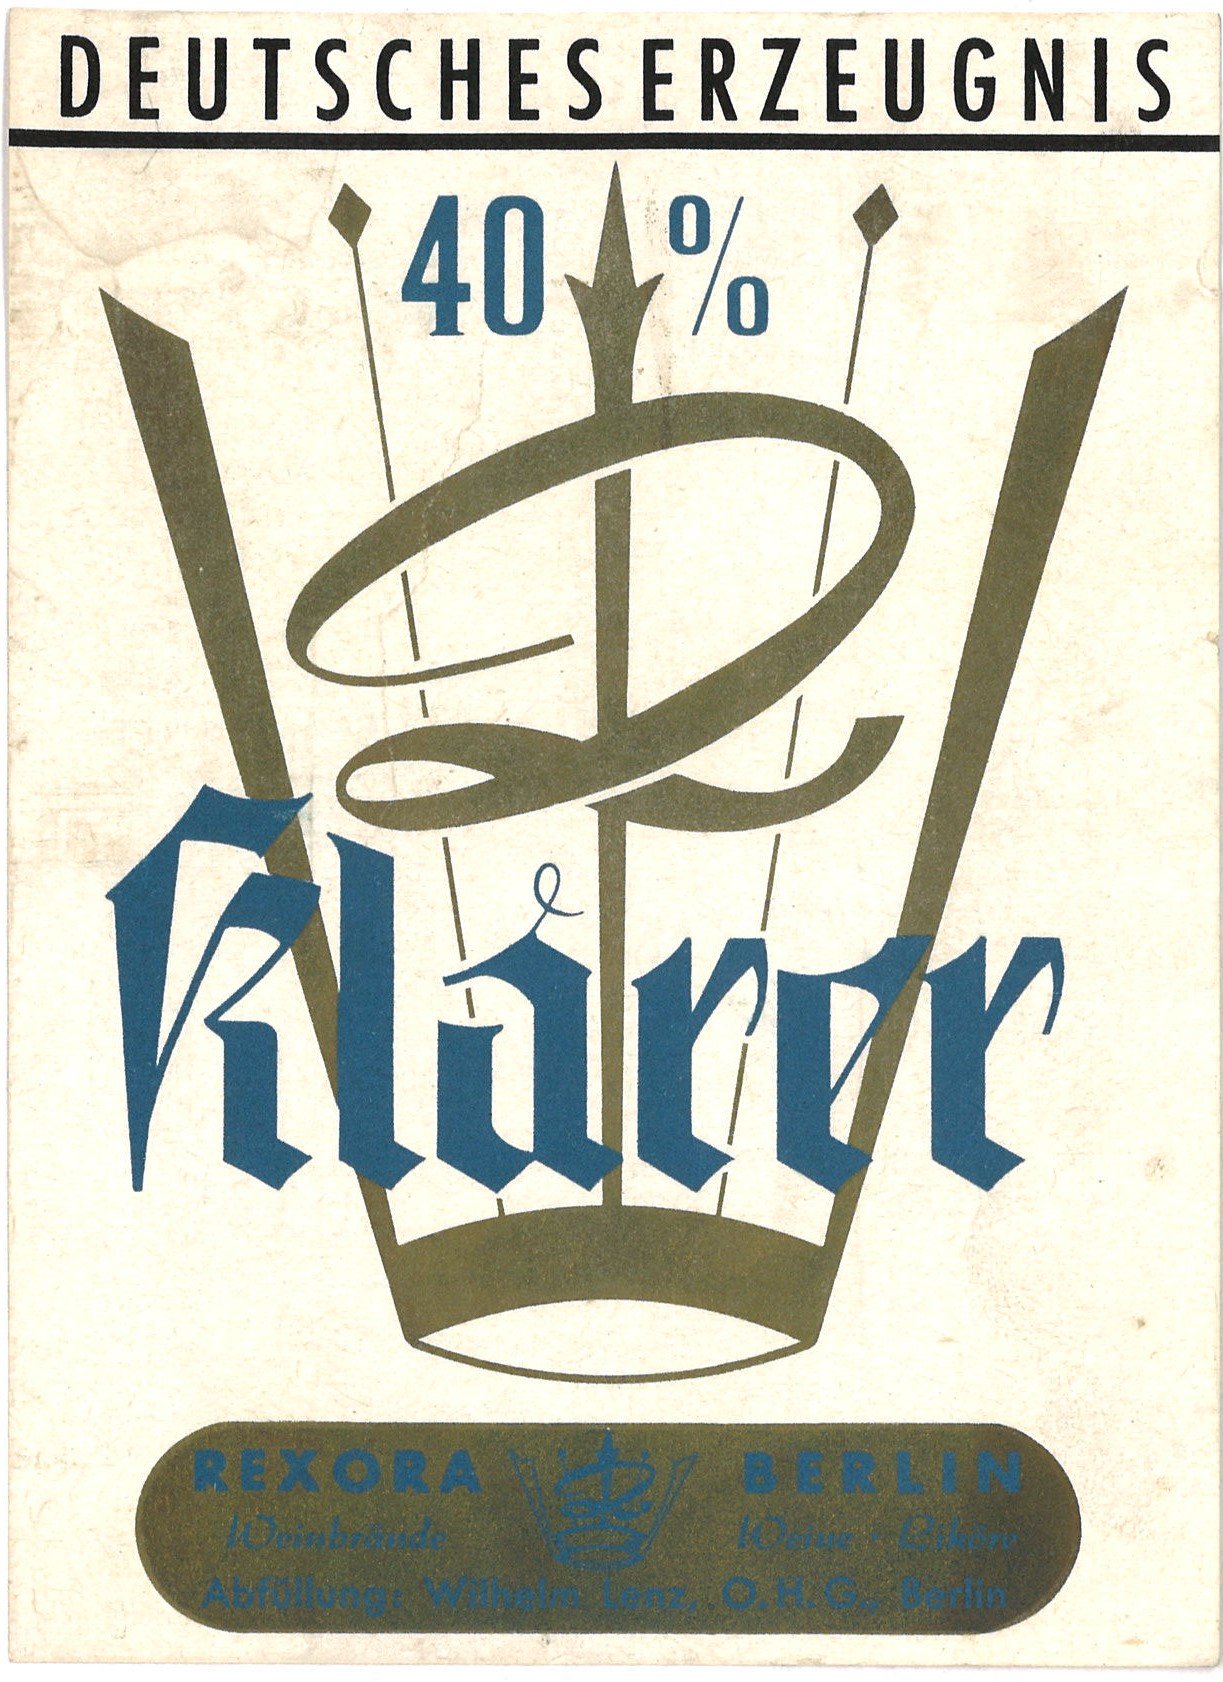 Berlin, Rexora: Klarer (Landesgeschichtliche Vereinigung für die Mark Brandenburg e.V., Archiv CC BY)